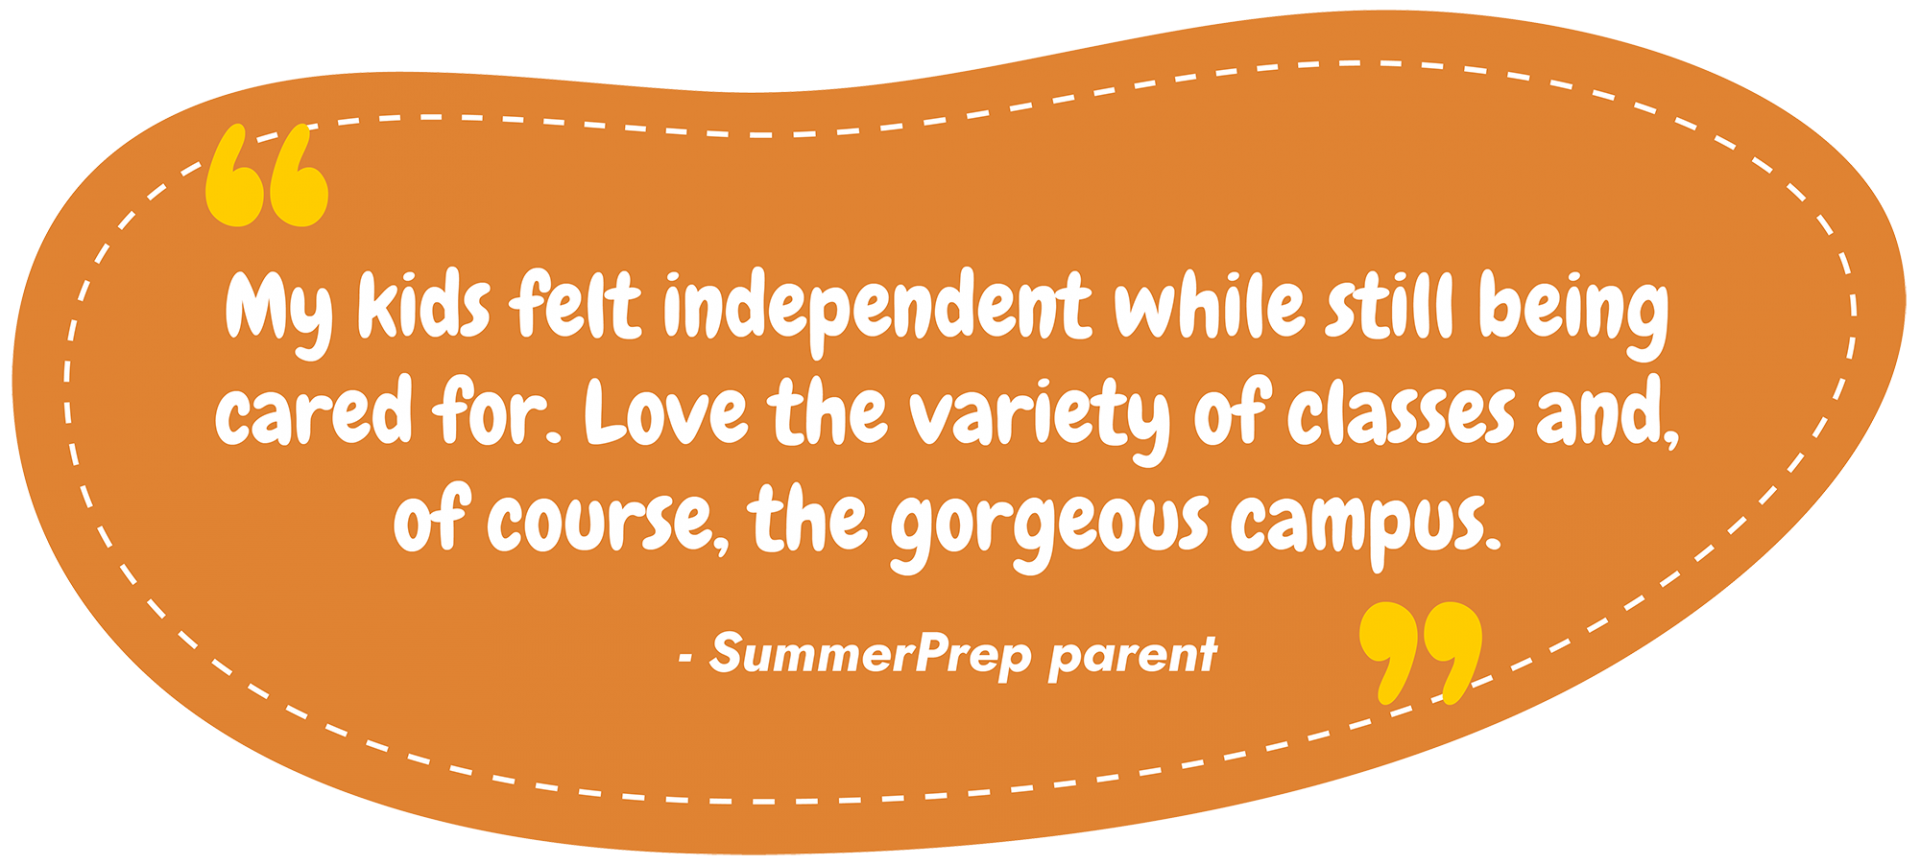 Summerprep parent quote